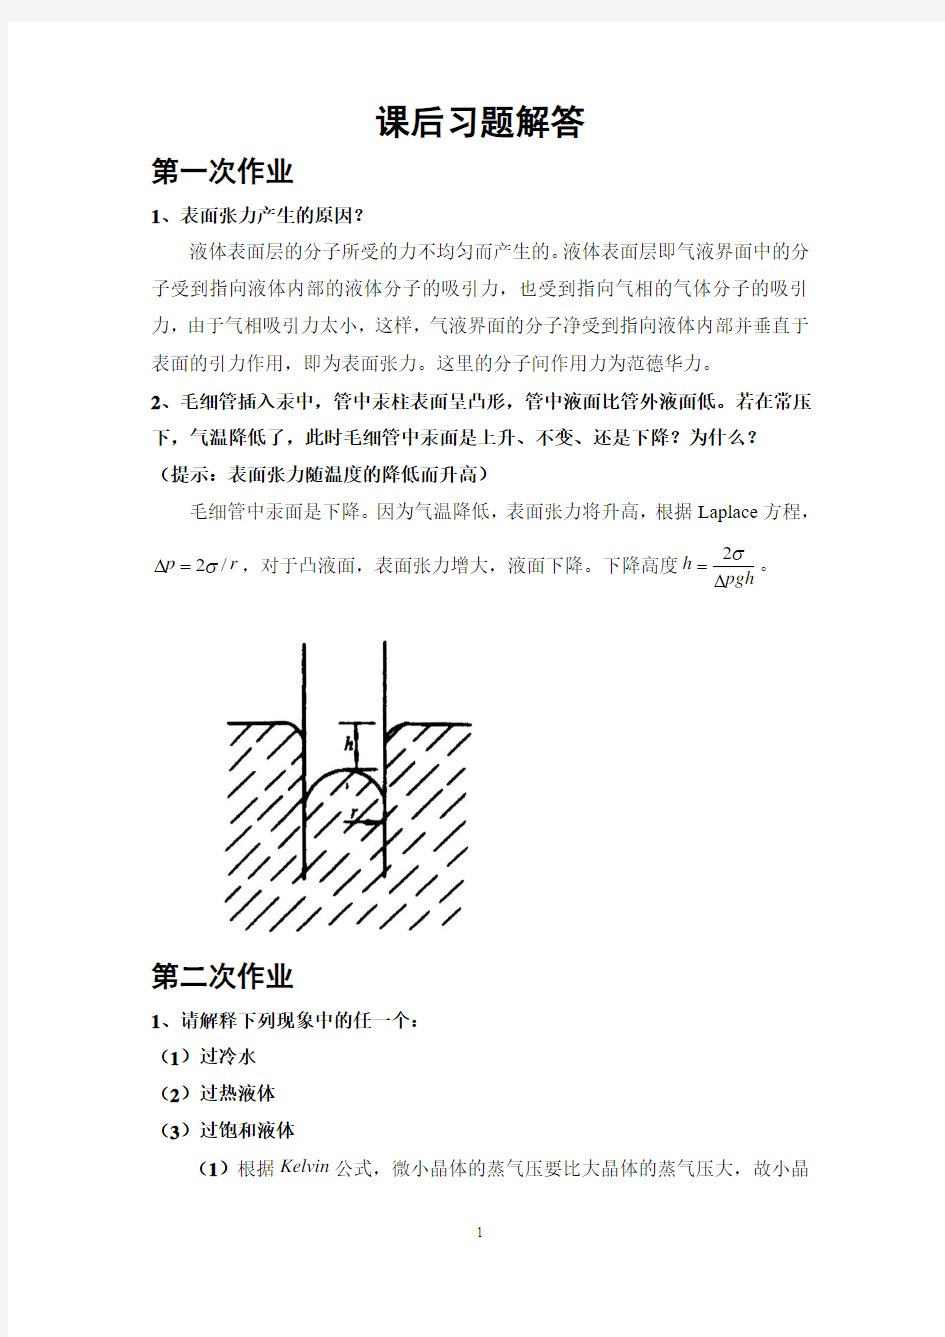 天津工业大学材料表界面作业题汇总解答